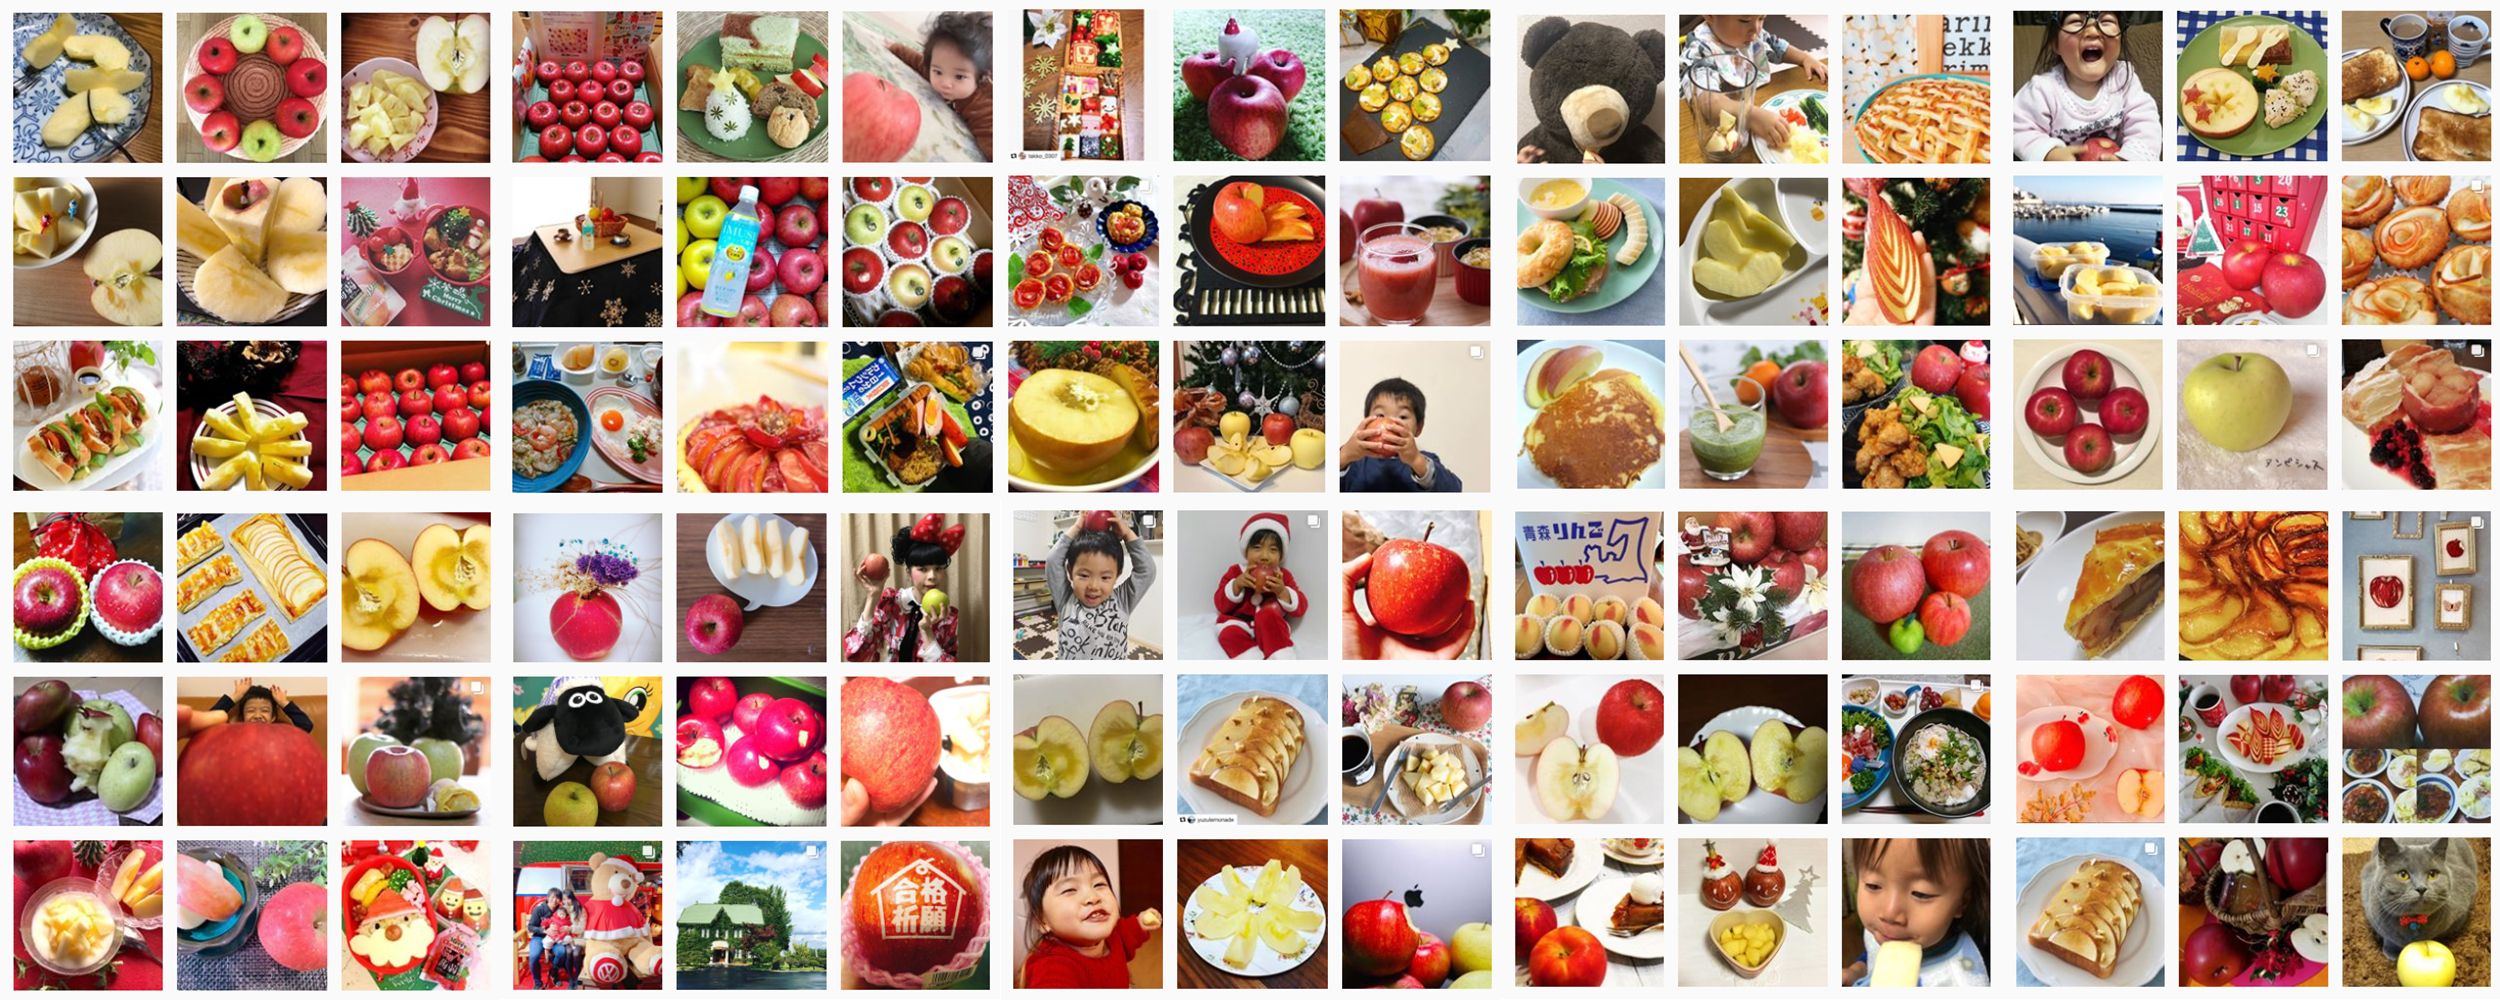 私の美活は食べるだけ青森りんごキャンペーン12月結果